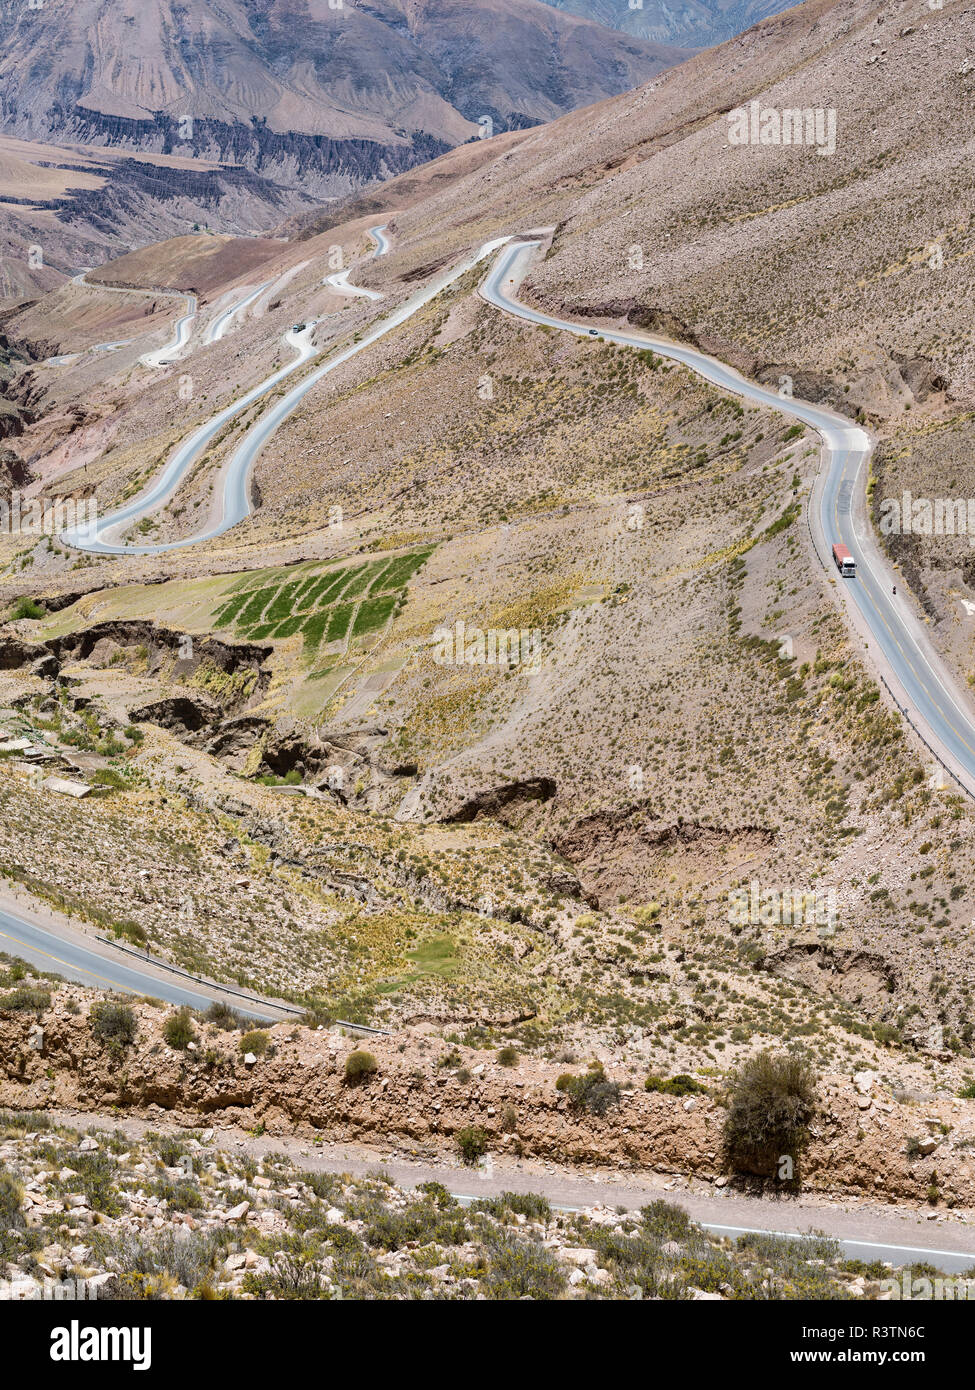 Route nationale RN 52, la route de montagne Cuesta del Lipan escalade jusqu'à Abra de Potrerillos. L'Amérique du Sud, Argentine Banque D'Images